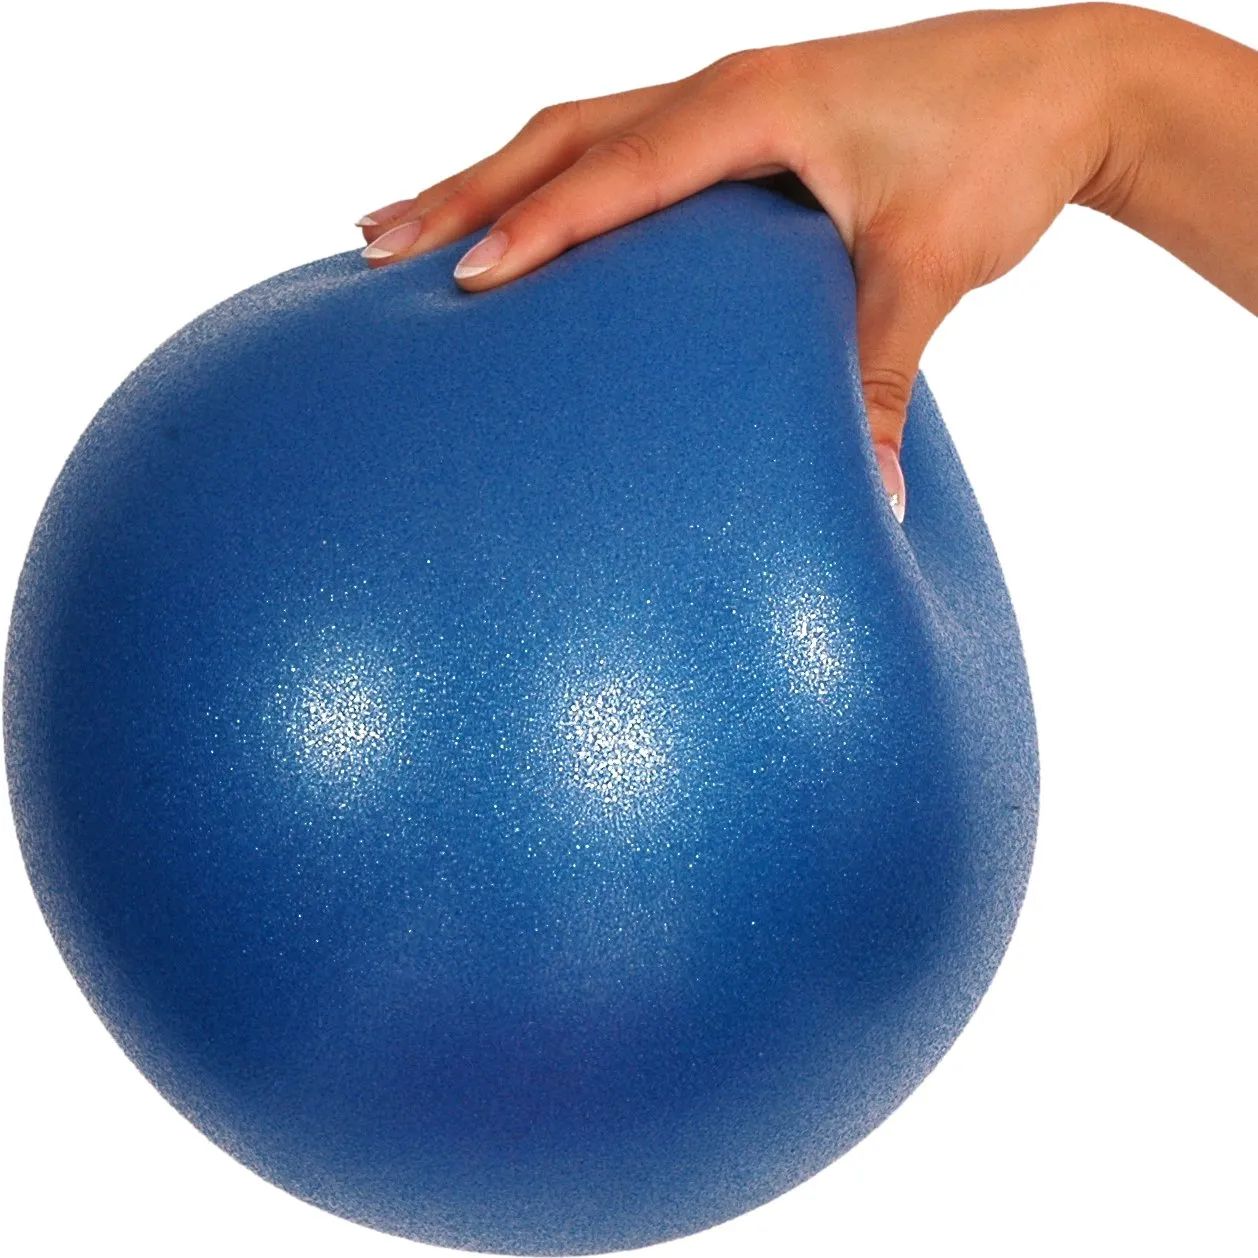 Vergelijkbaar Goot onaangenaam Yoga bal kopen? | Pilates ballen | Mambo Max | Laagste prijs